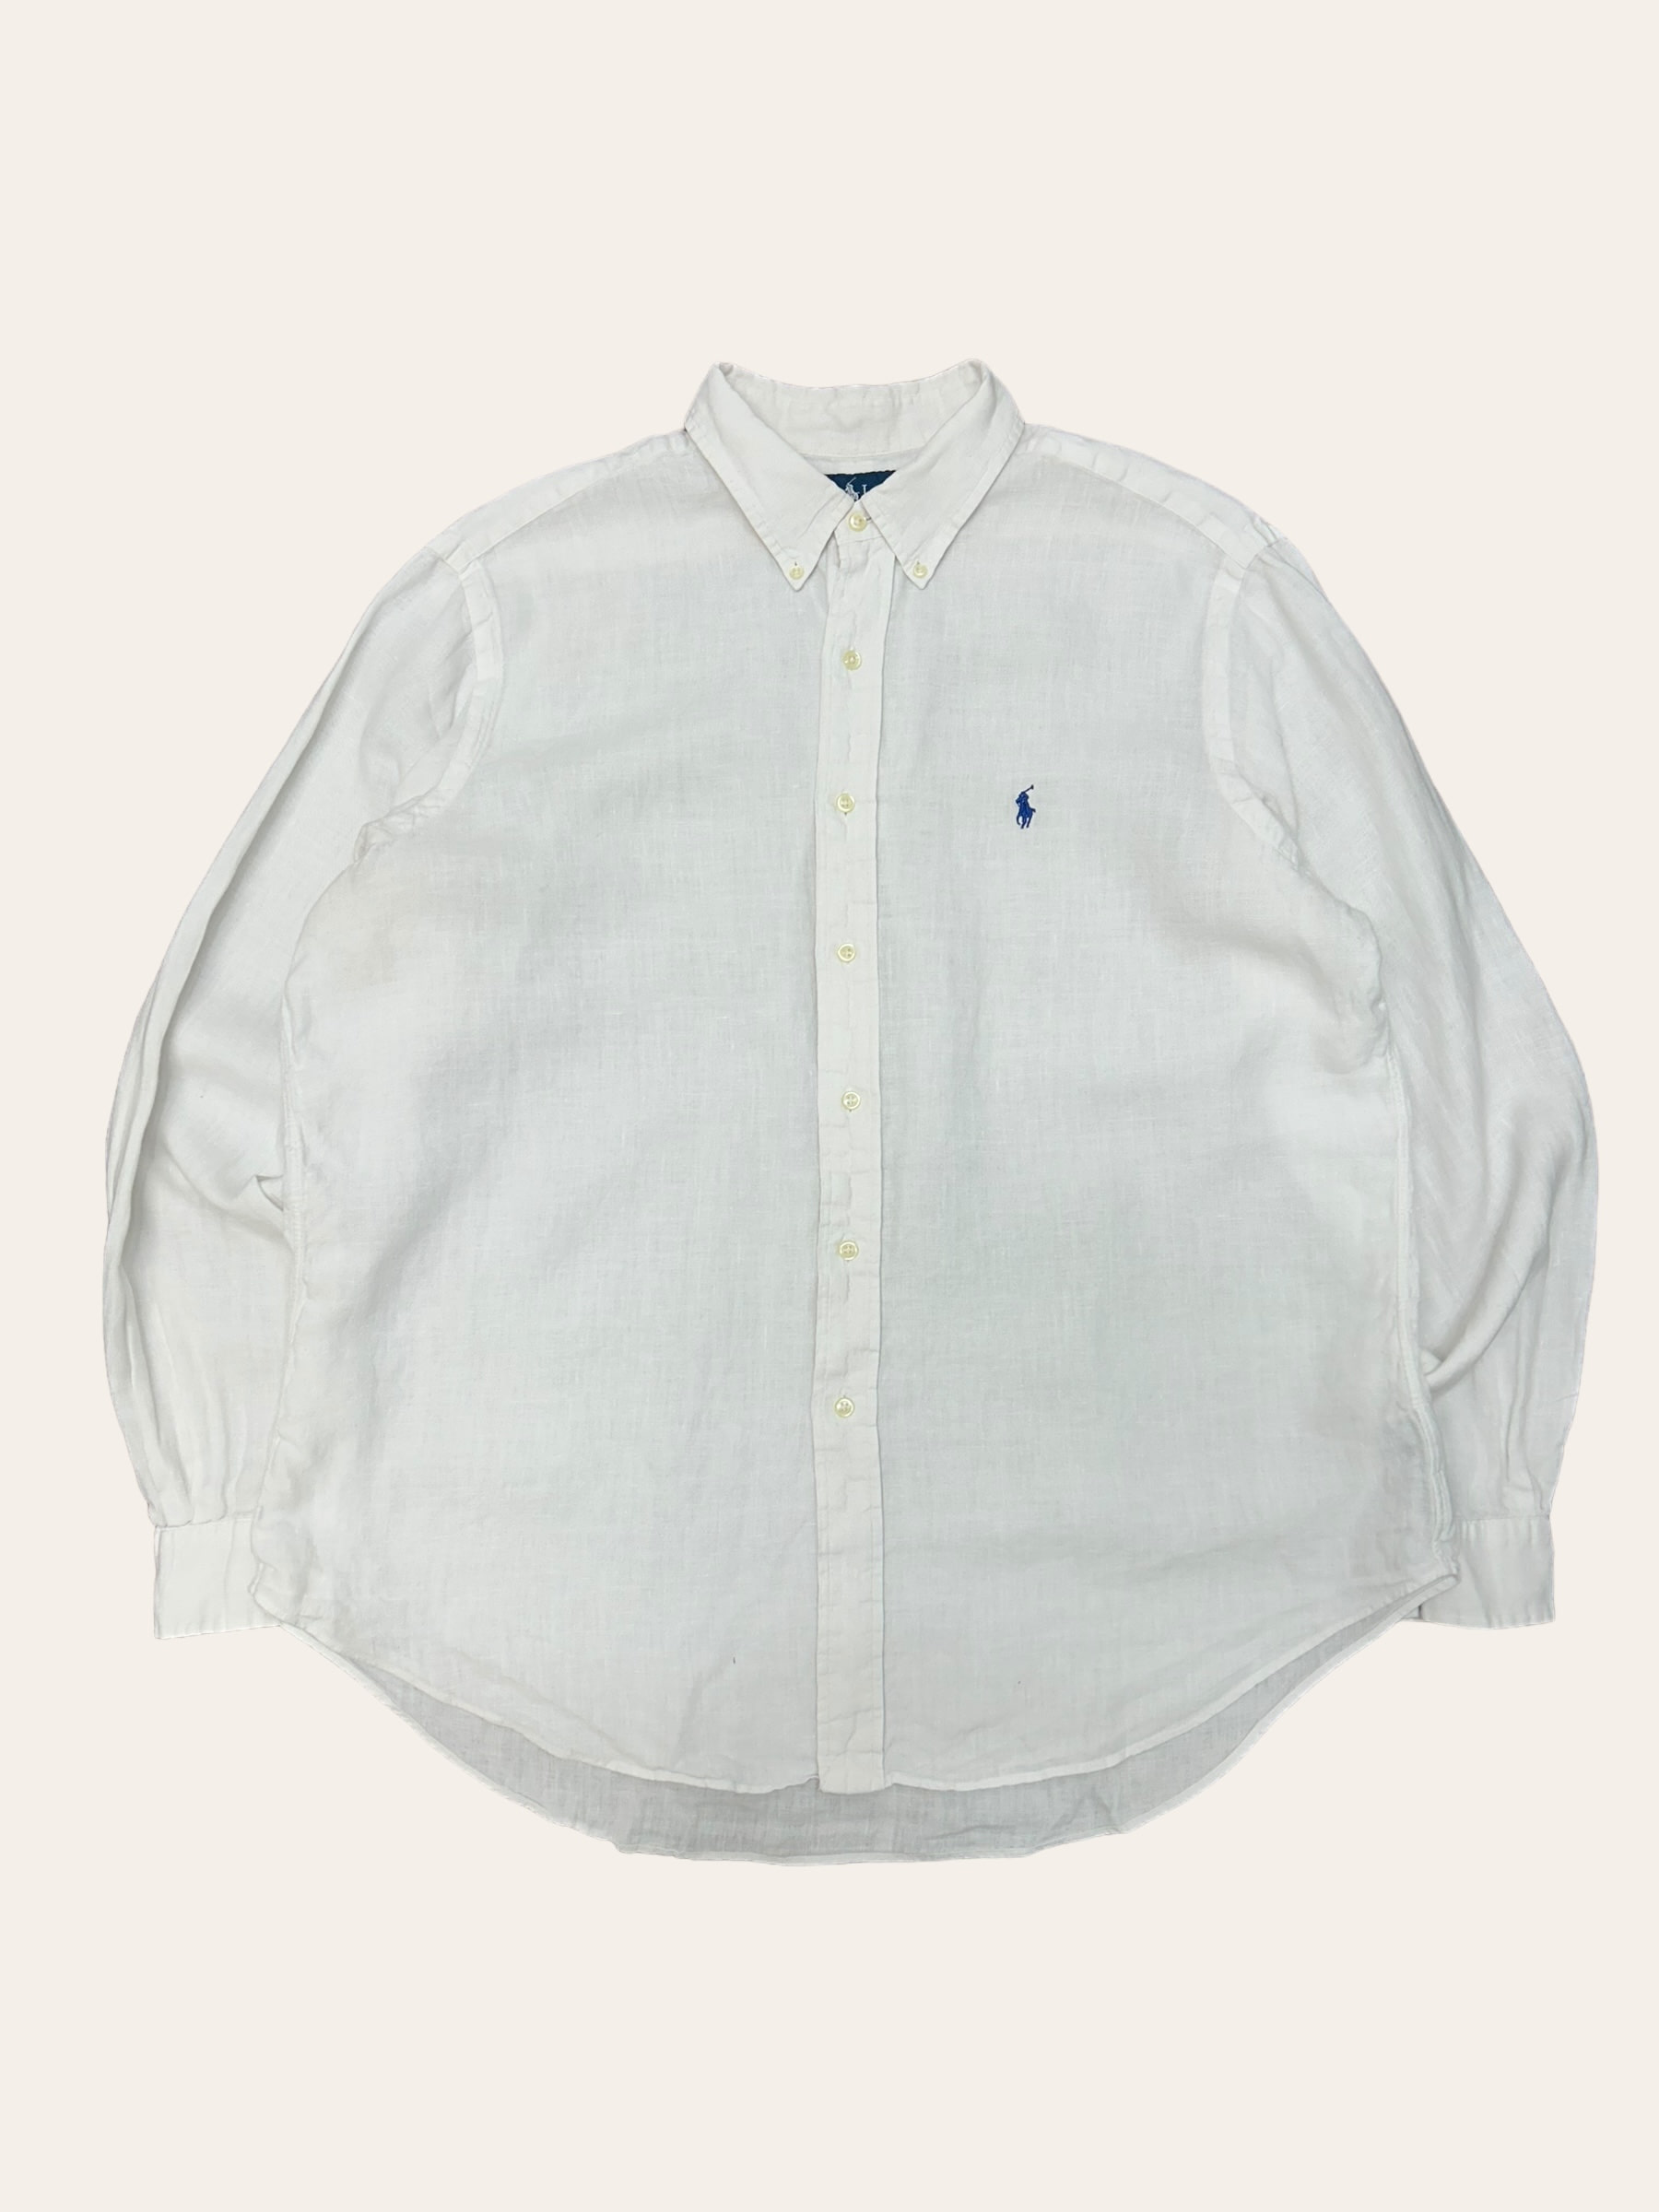 Polo ralph lauren white linen shirt XL